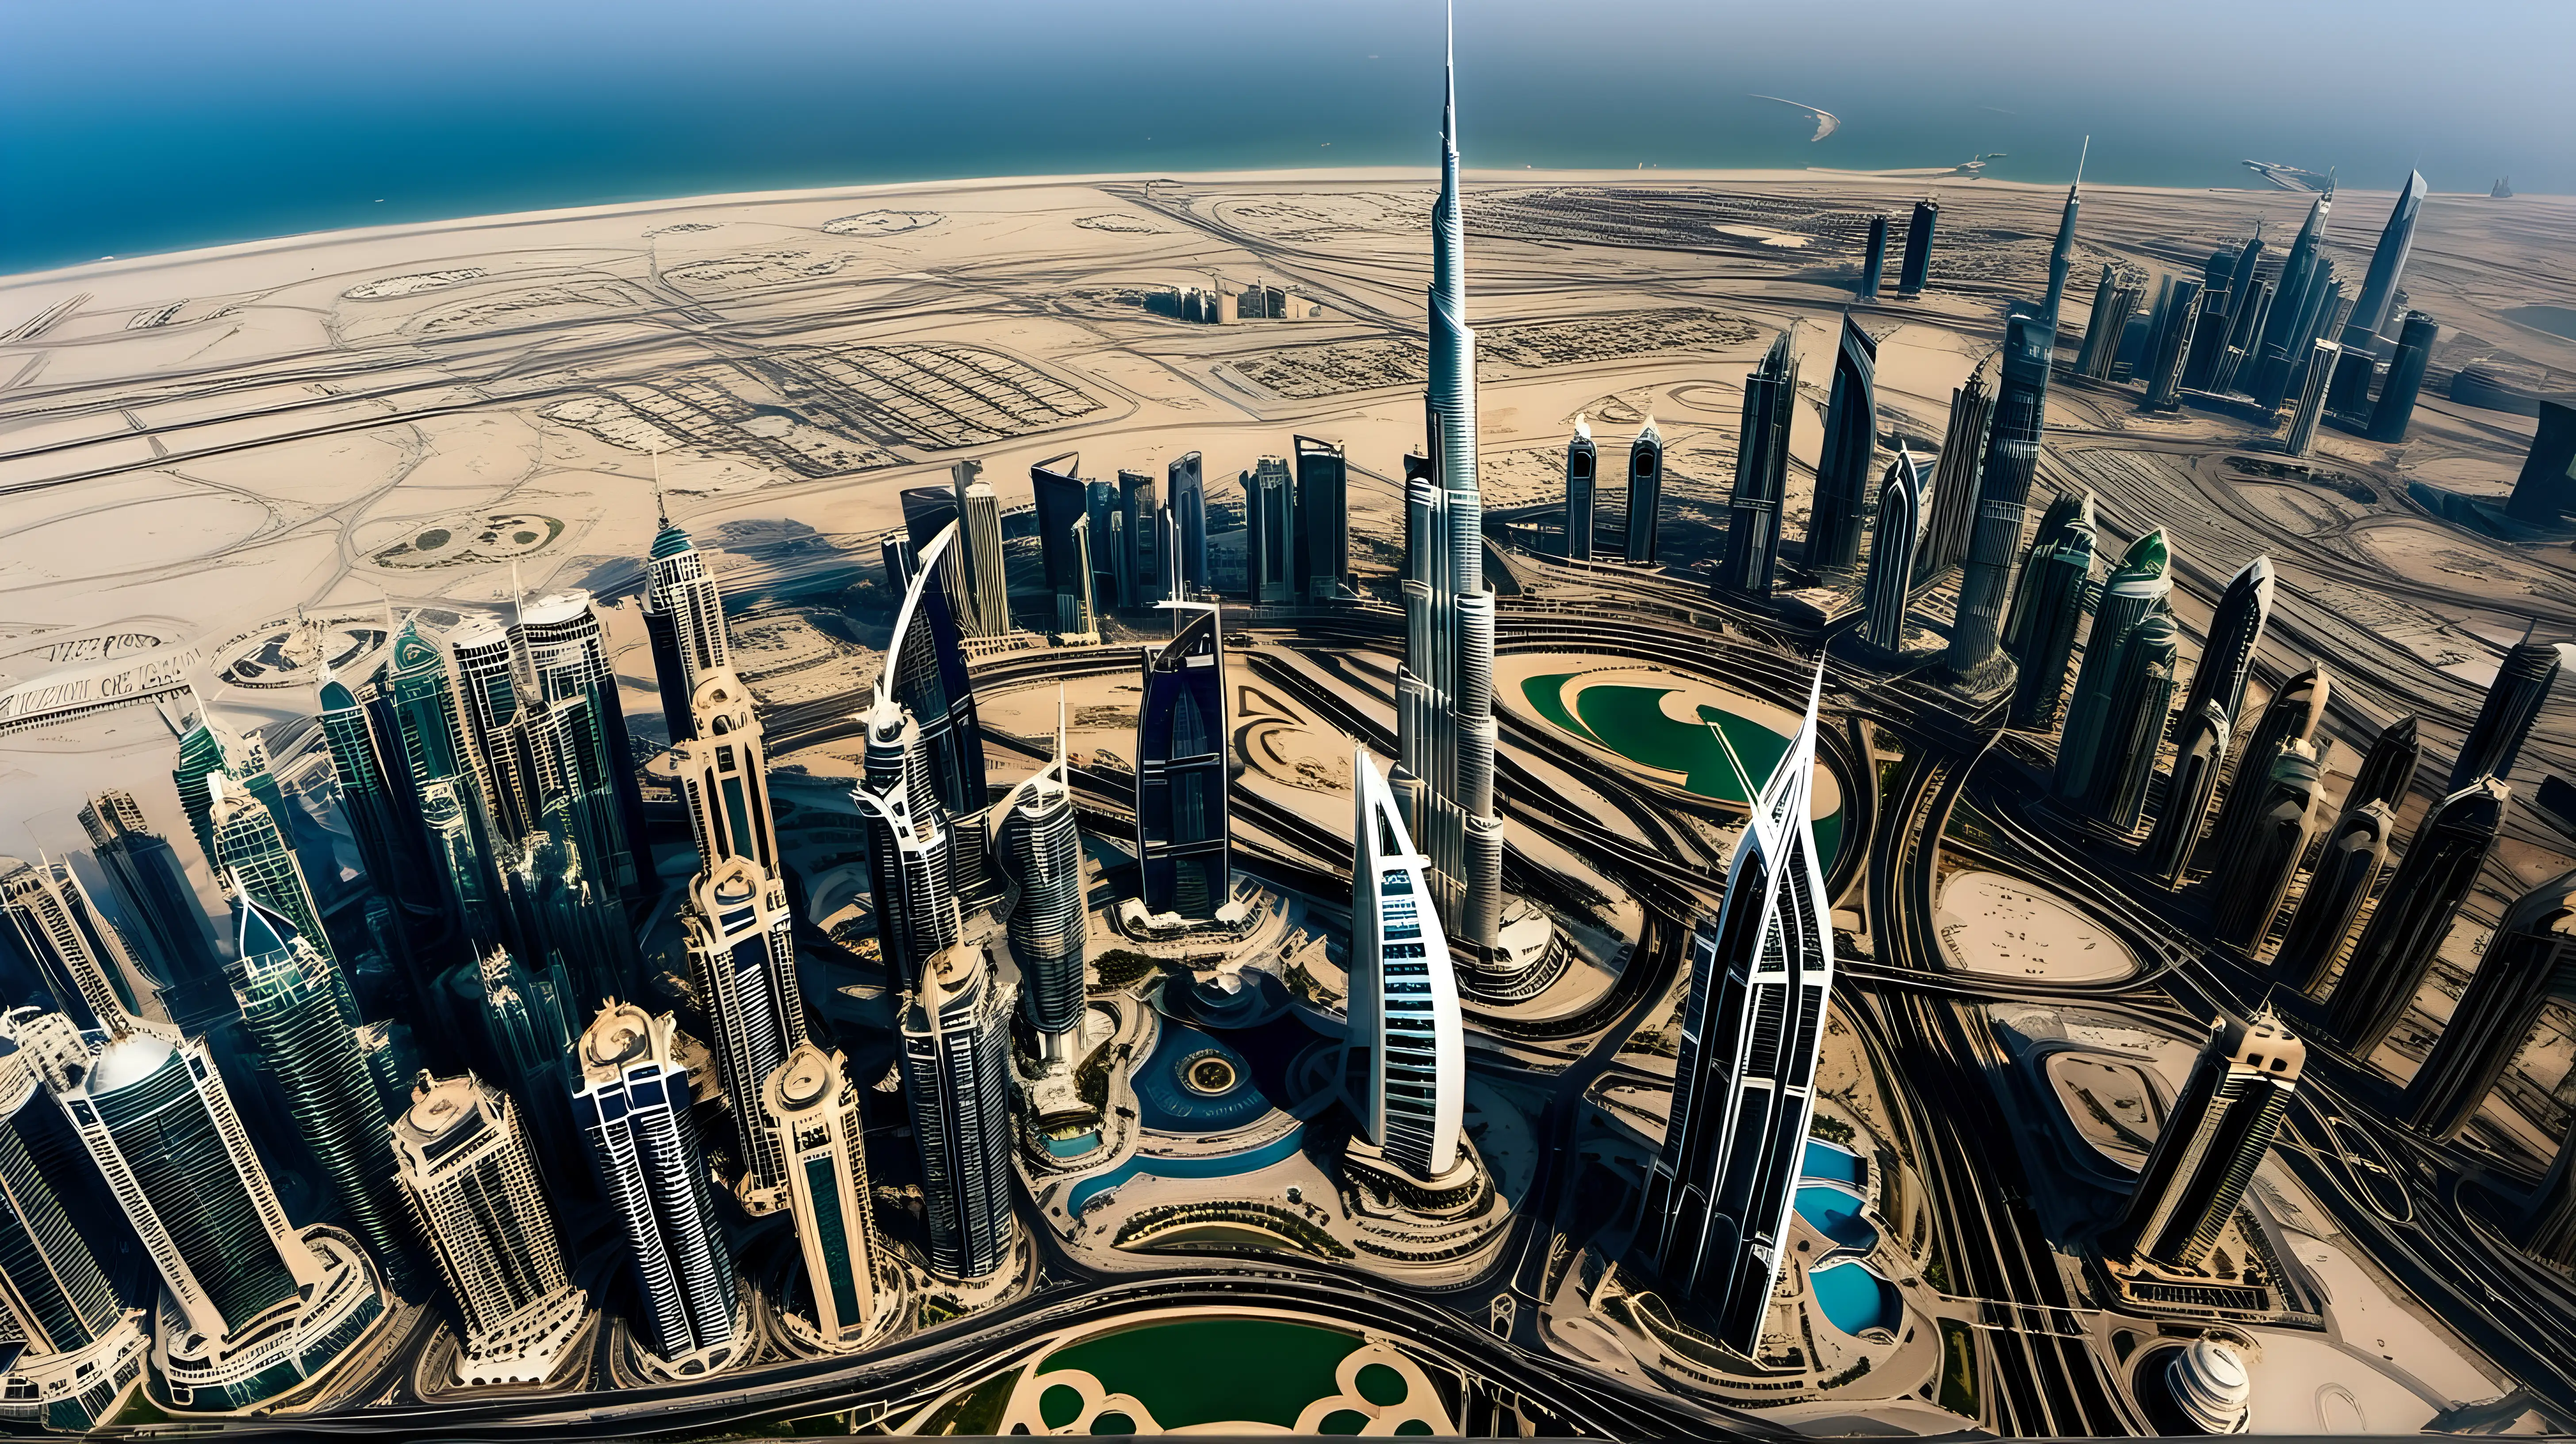 Majestic Panorama Capturing the Royalty and Grandeur of Burj Khalifa Dubai